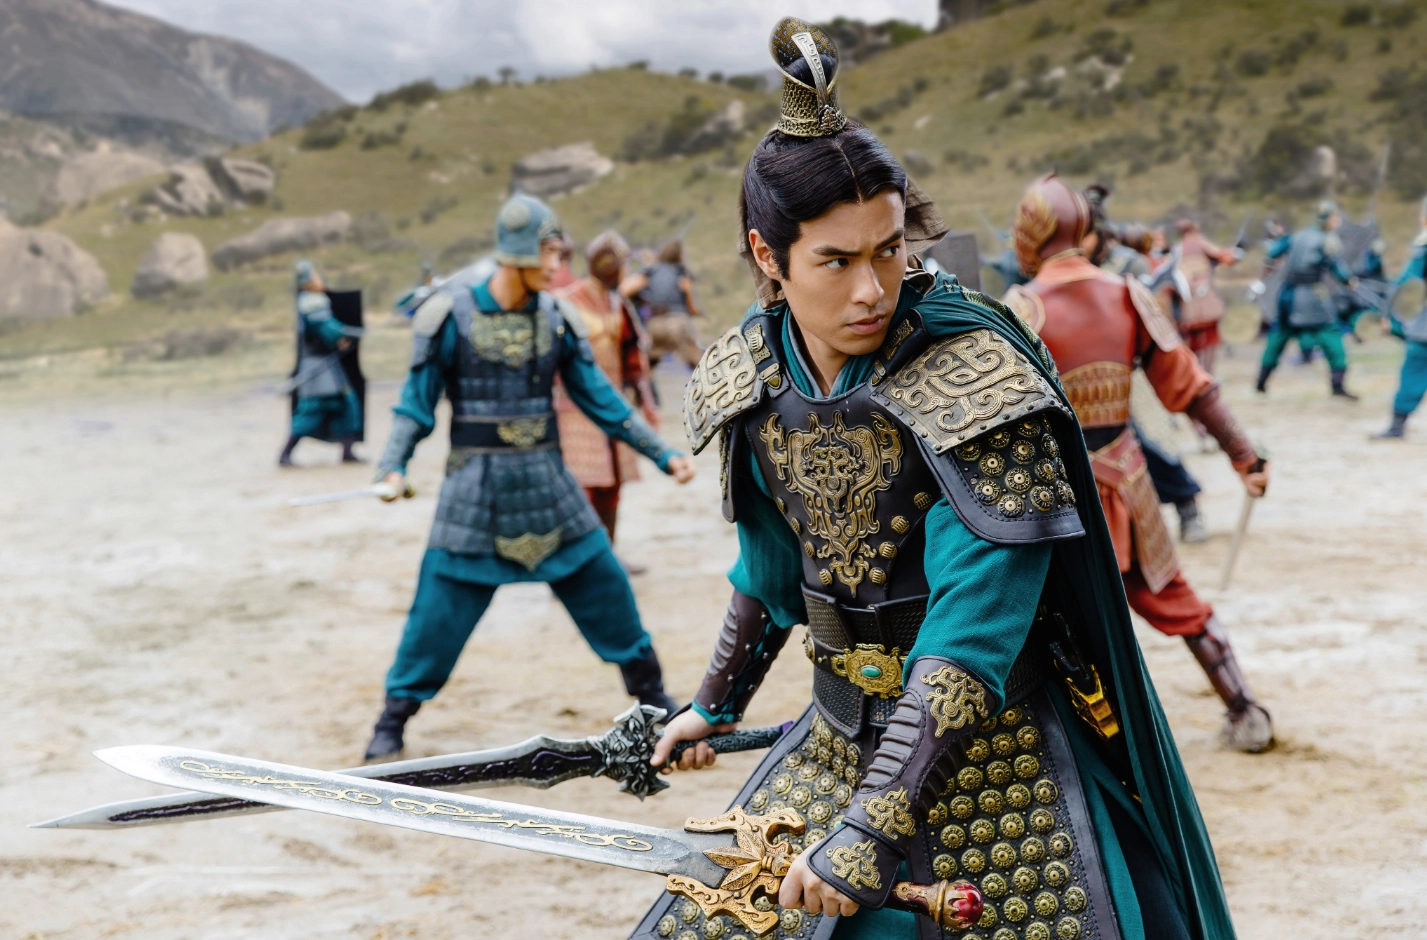 รีวิวหนัง Dynasty Warriors: มหาสงครามขุนศึกสามก๊ก หนังต่อสู้แฟนตาซีสุดดุเดือดของนักรบที่สร้างจากซีรีส์เกม Musou ยอดฮิตในชื่อเดียวกัน